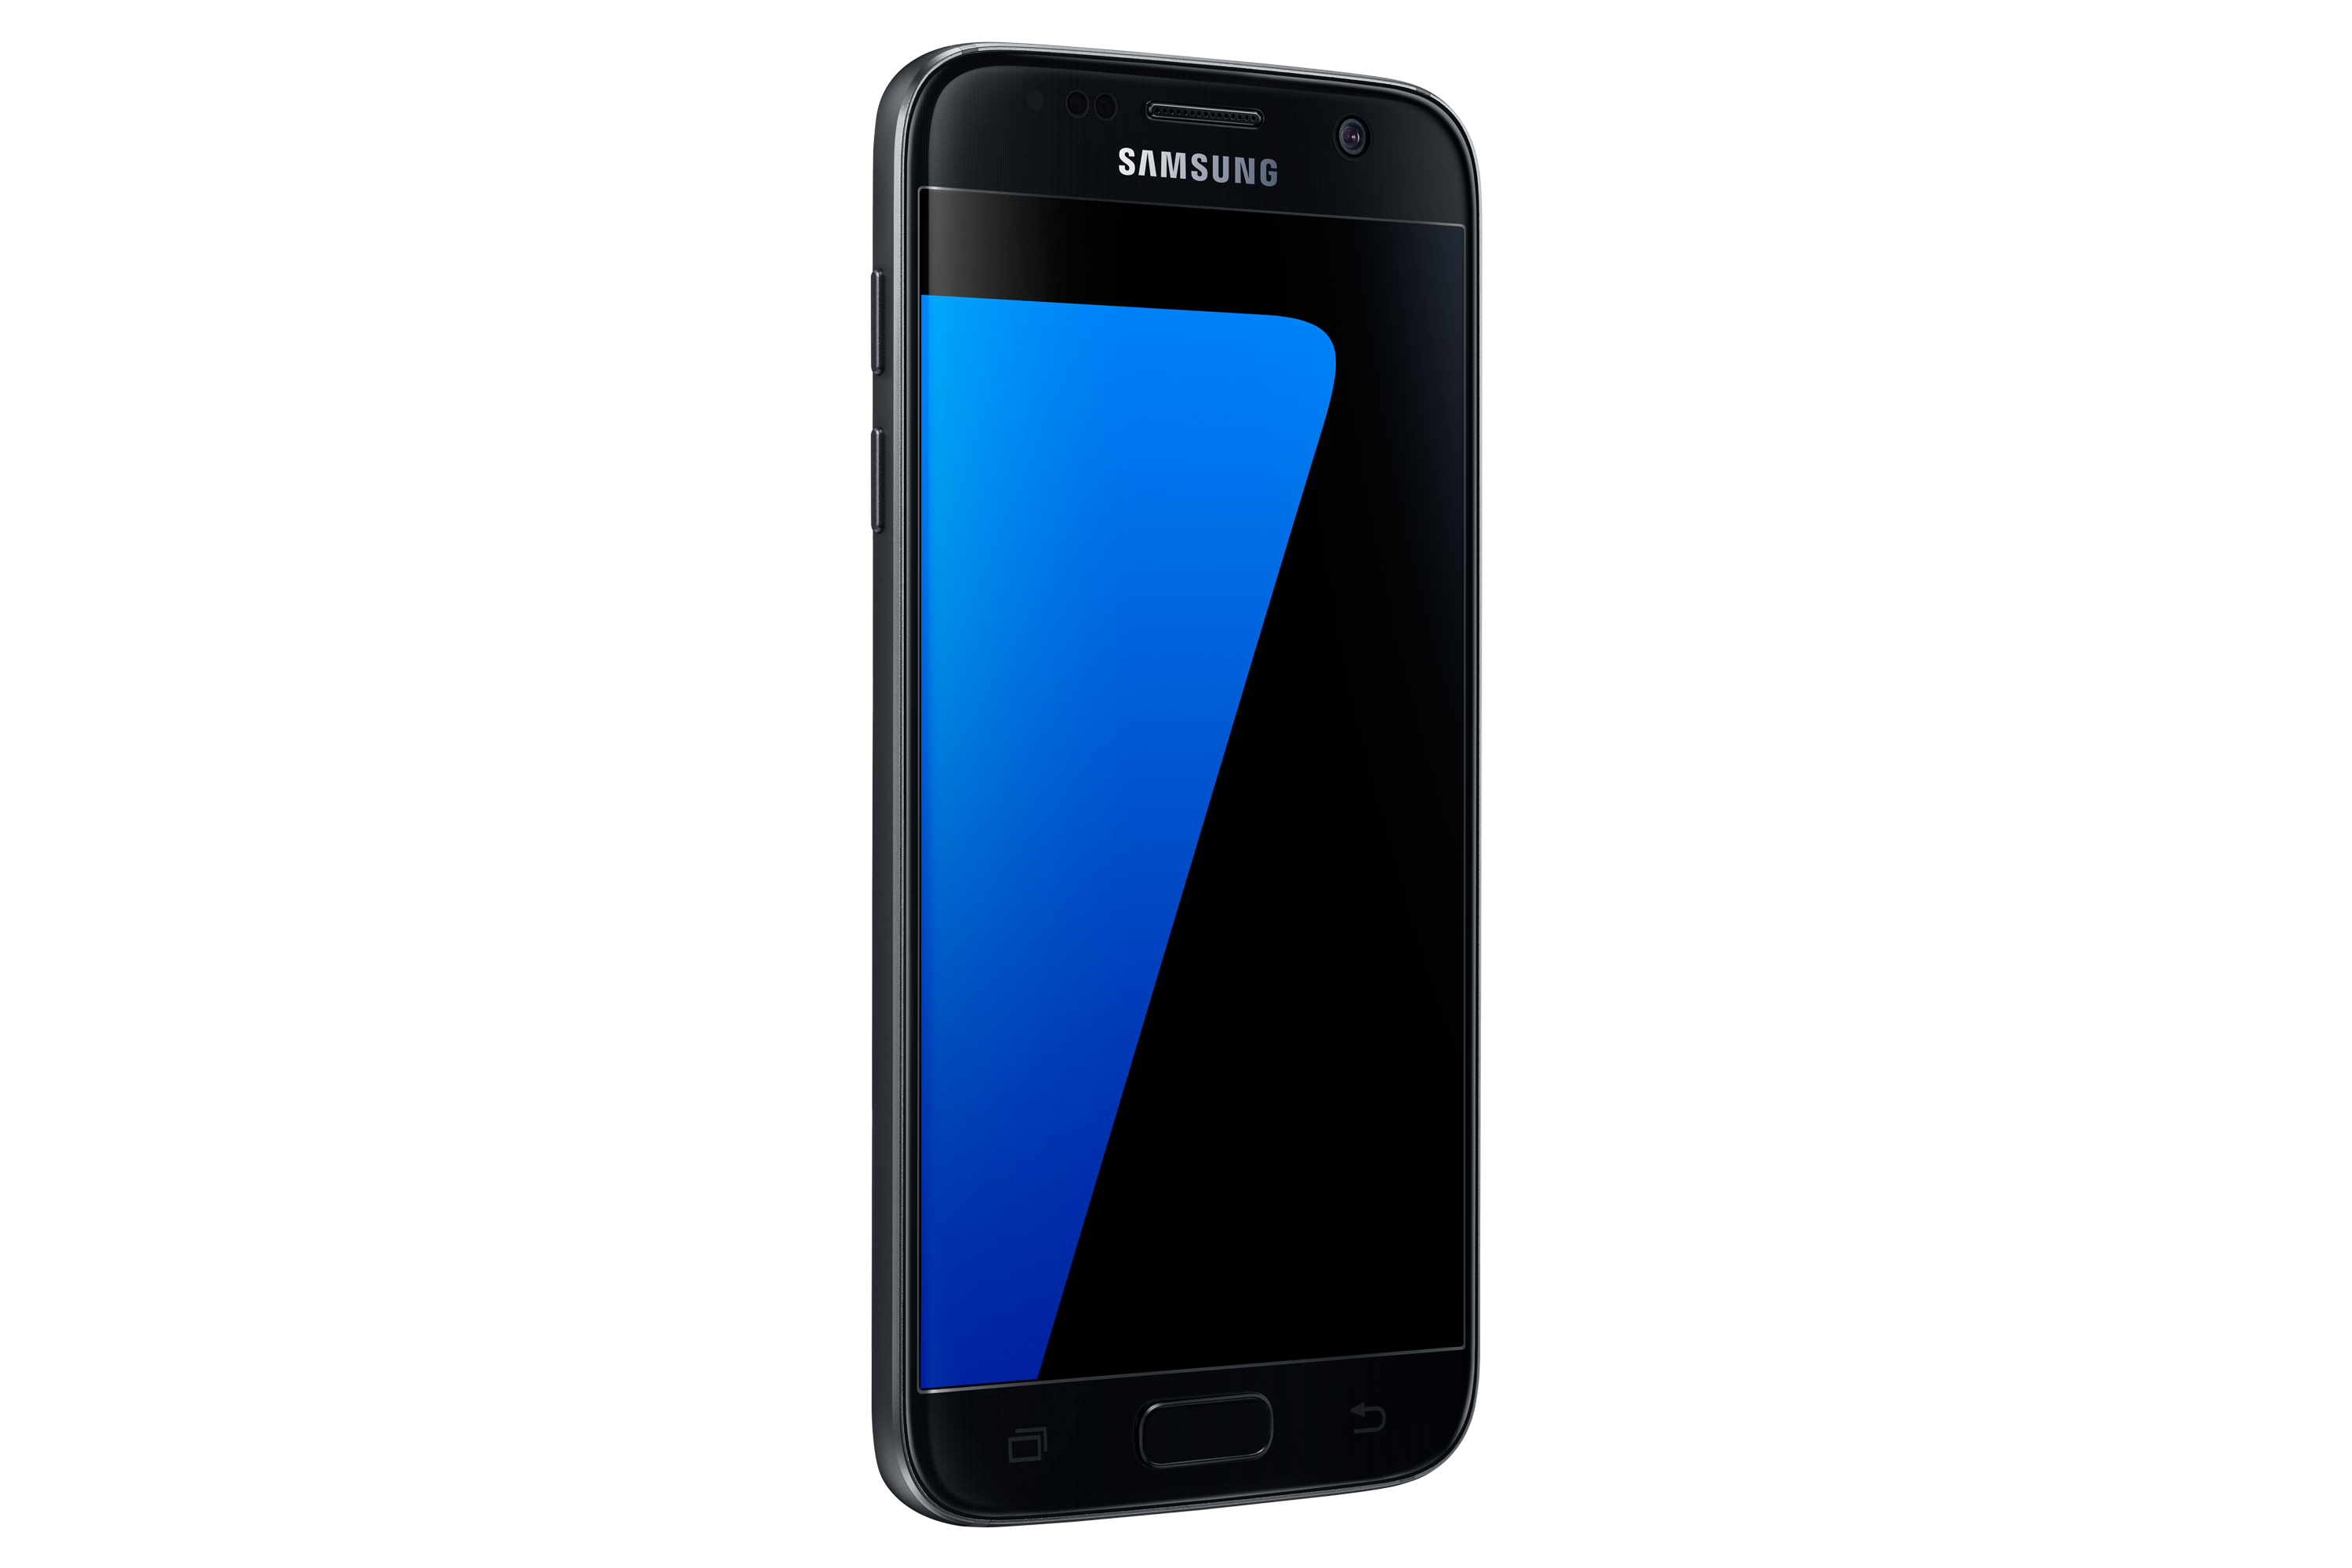 Samsung Galaxy S7 black